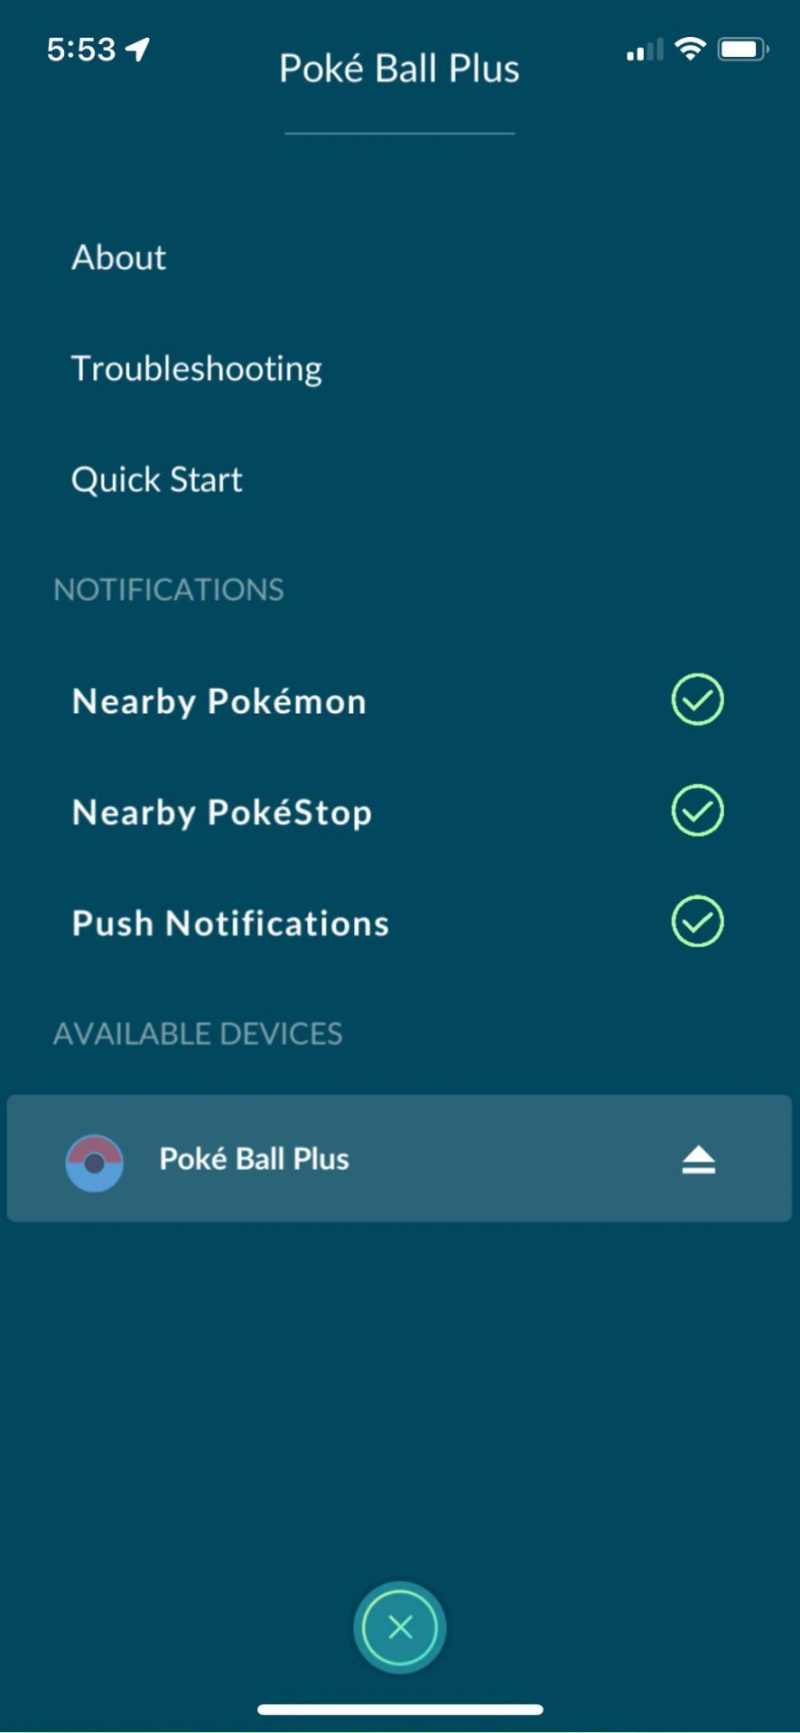   Connectez Poke Ball Plus à Pokémon Go voir Menu pour gérer les notifications